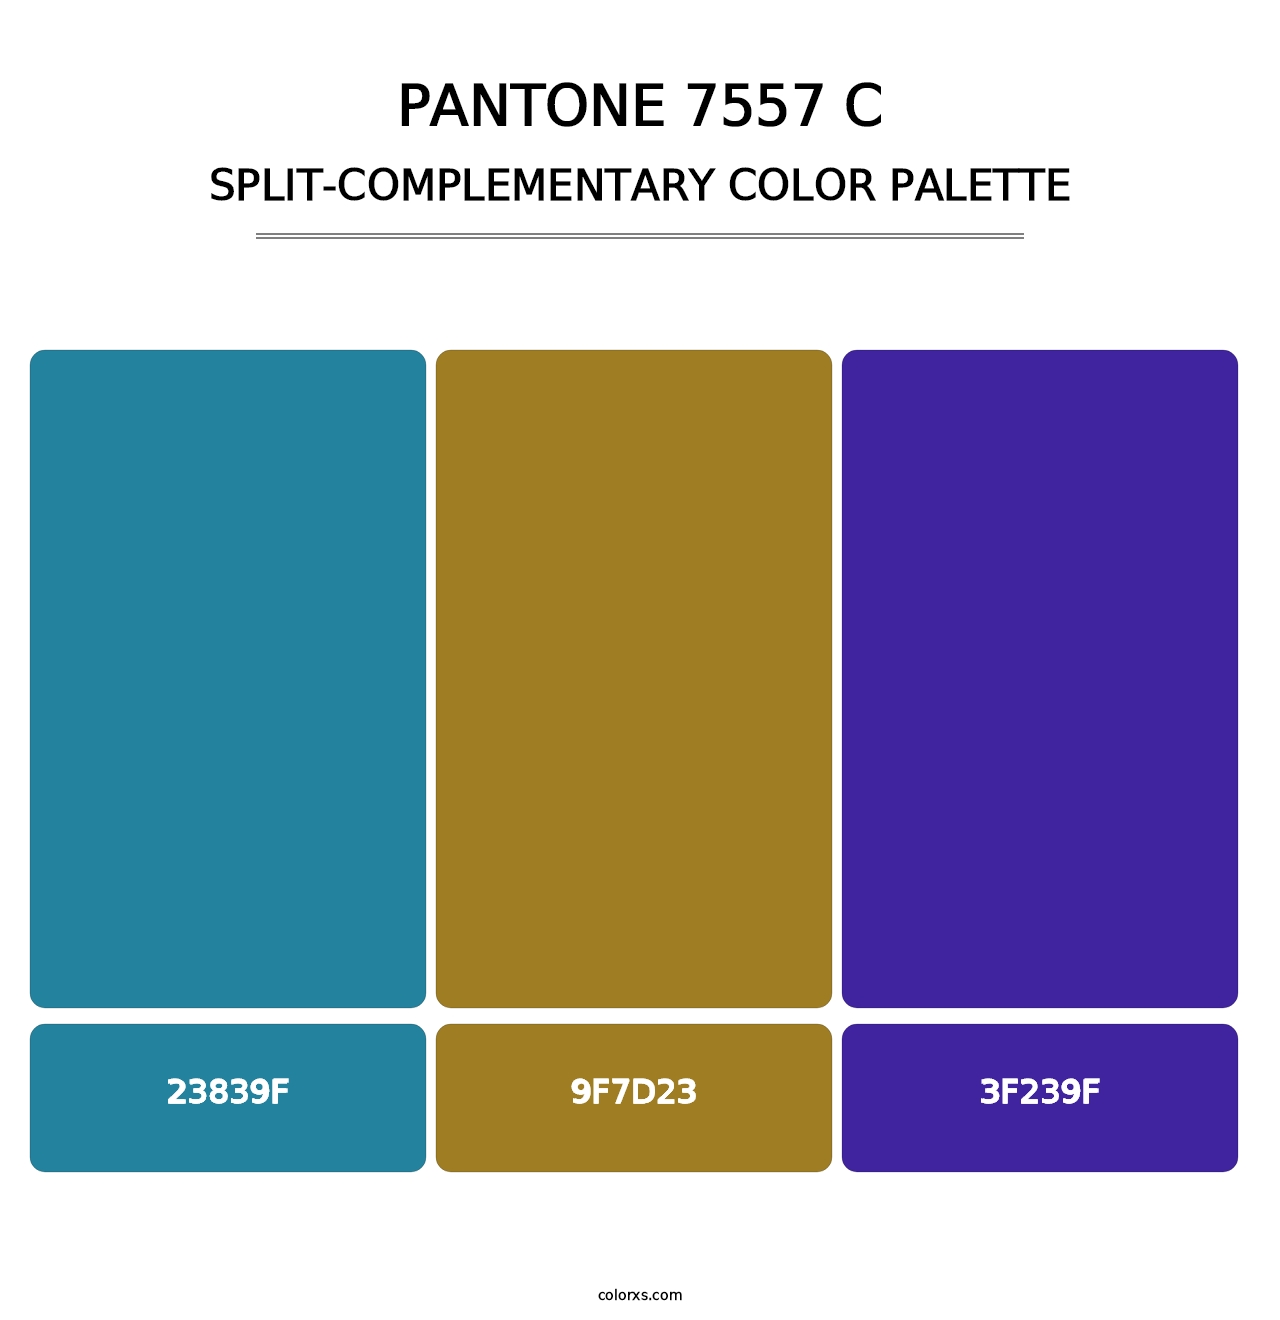 PANTONE 7557 C - Split-Complementary Color Palette